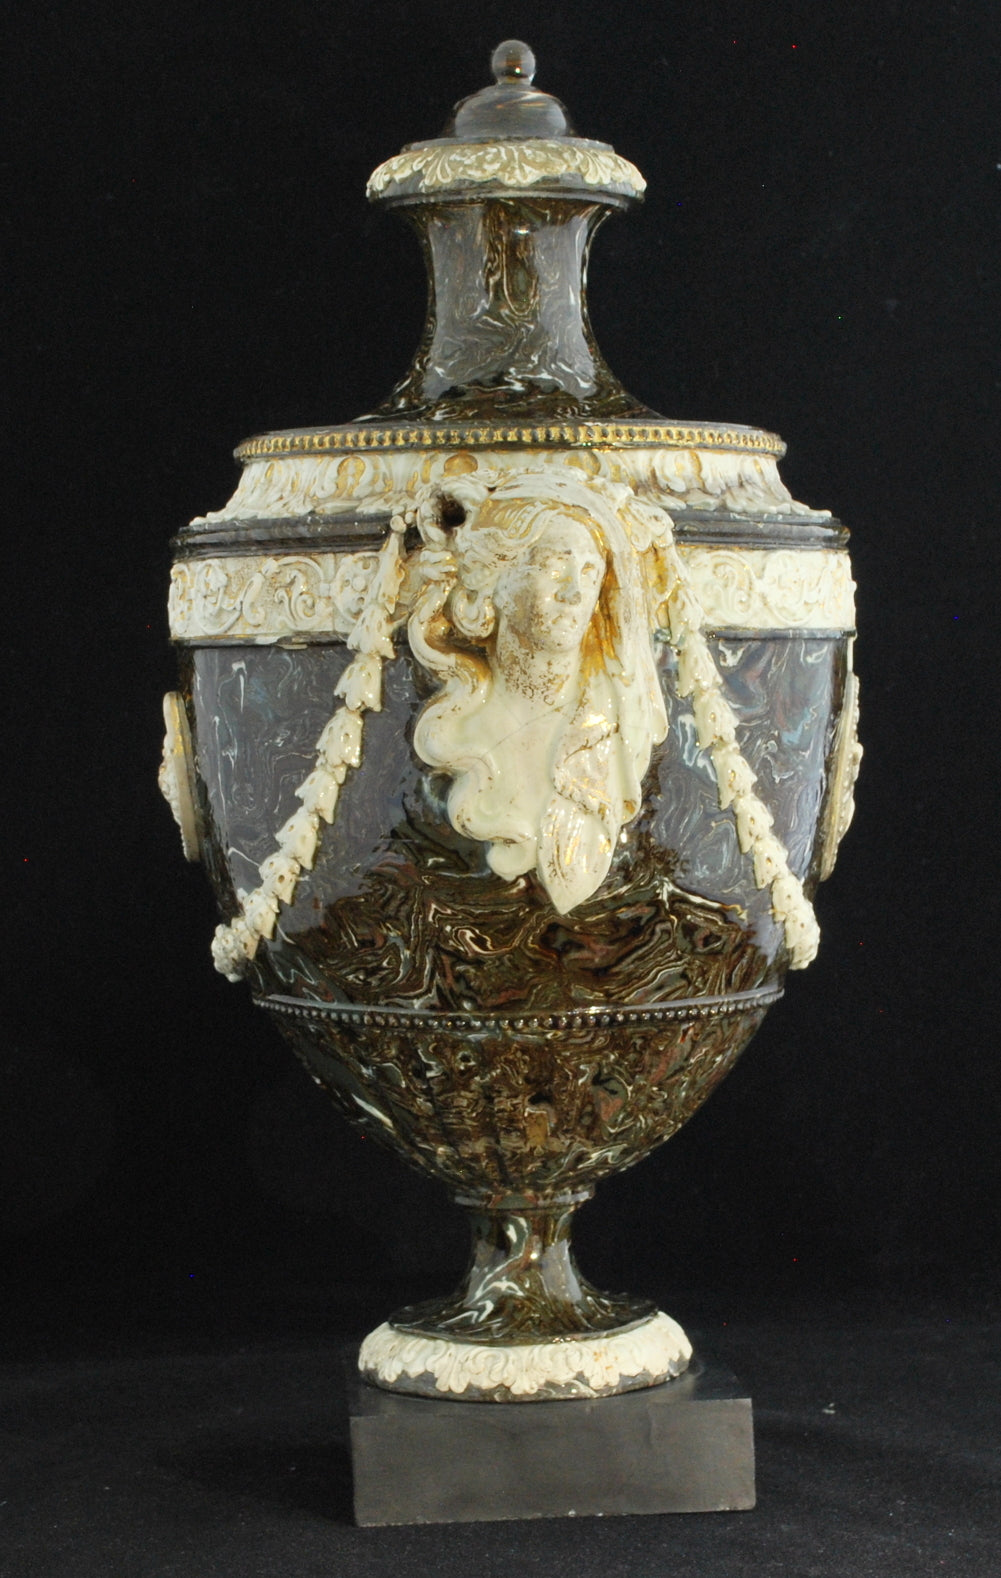 Marbelised vase, shield shape, gilding